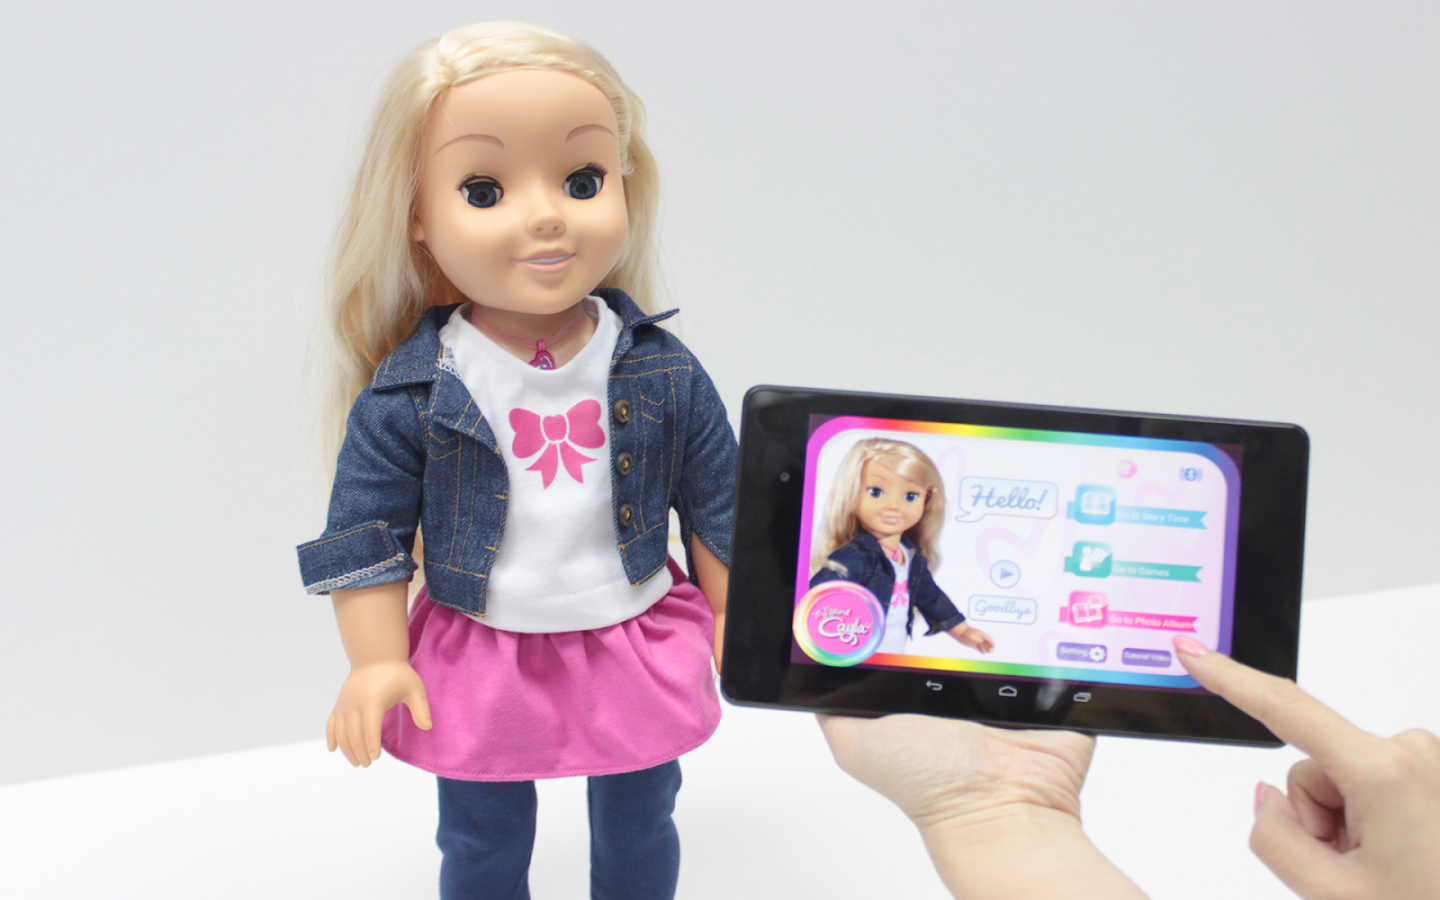 Il est techniquement possible de prendre le contrôle de la poupée à distance, ce qui représente un risque de cybersécurité.